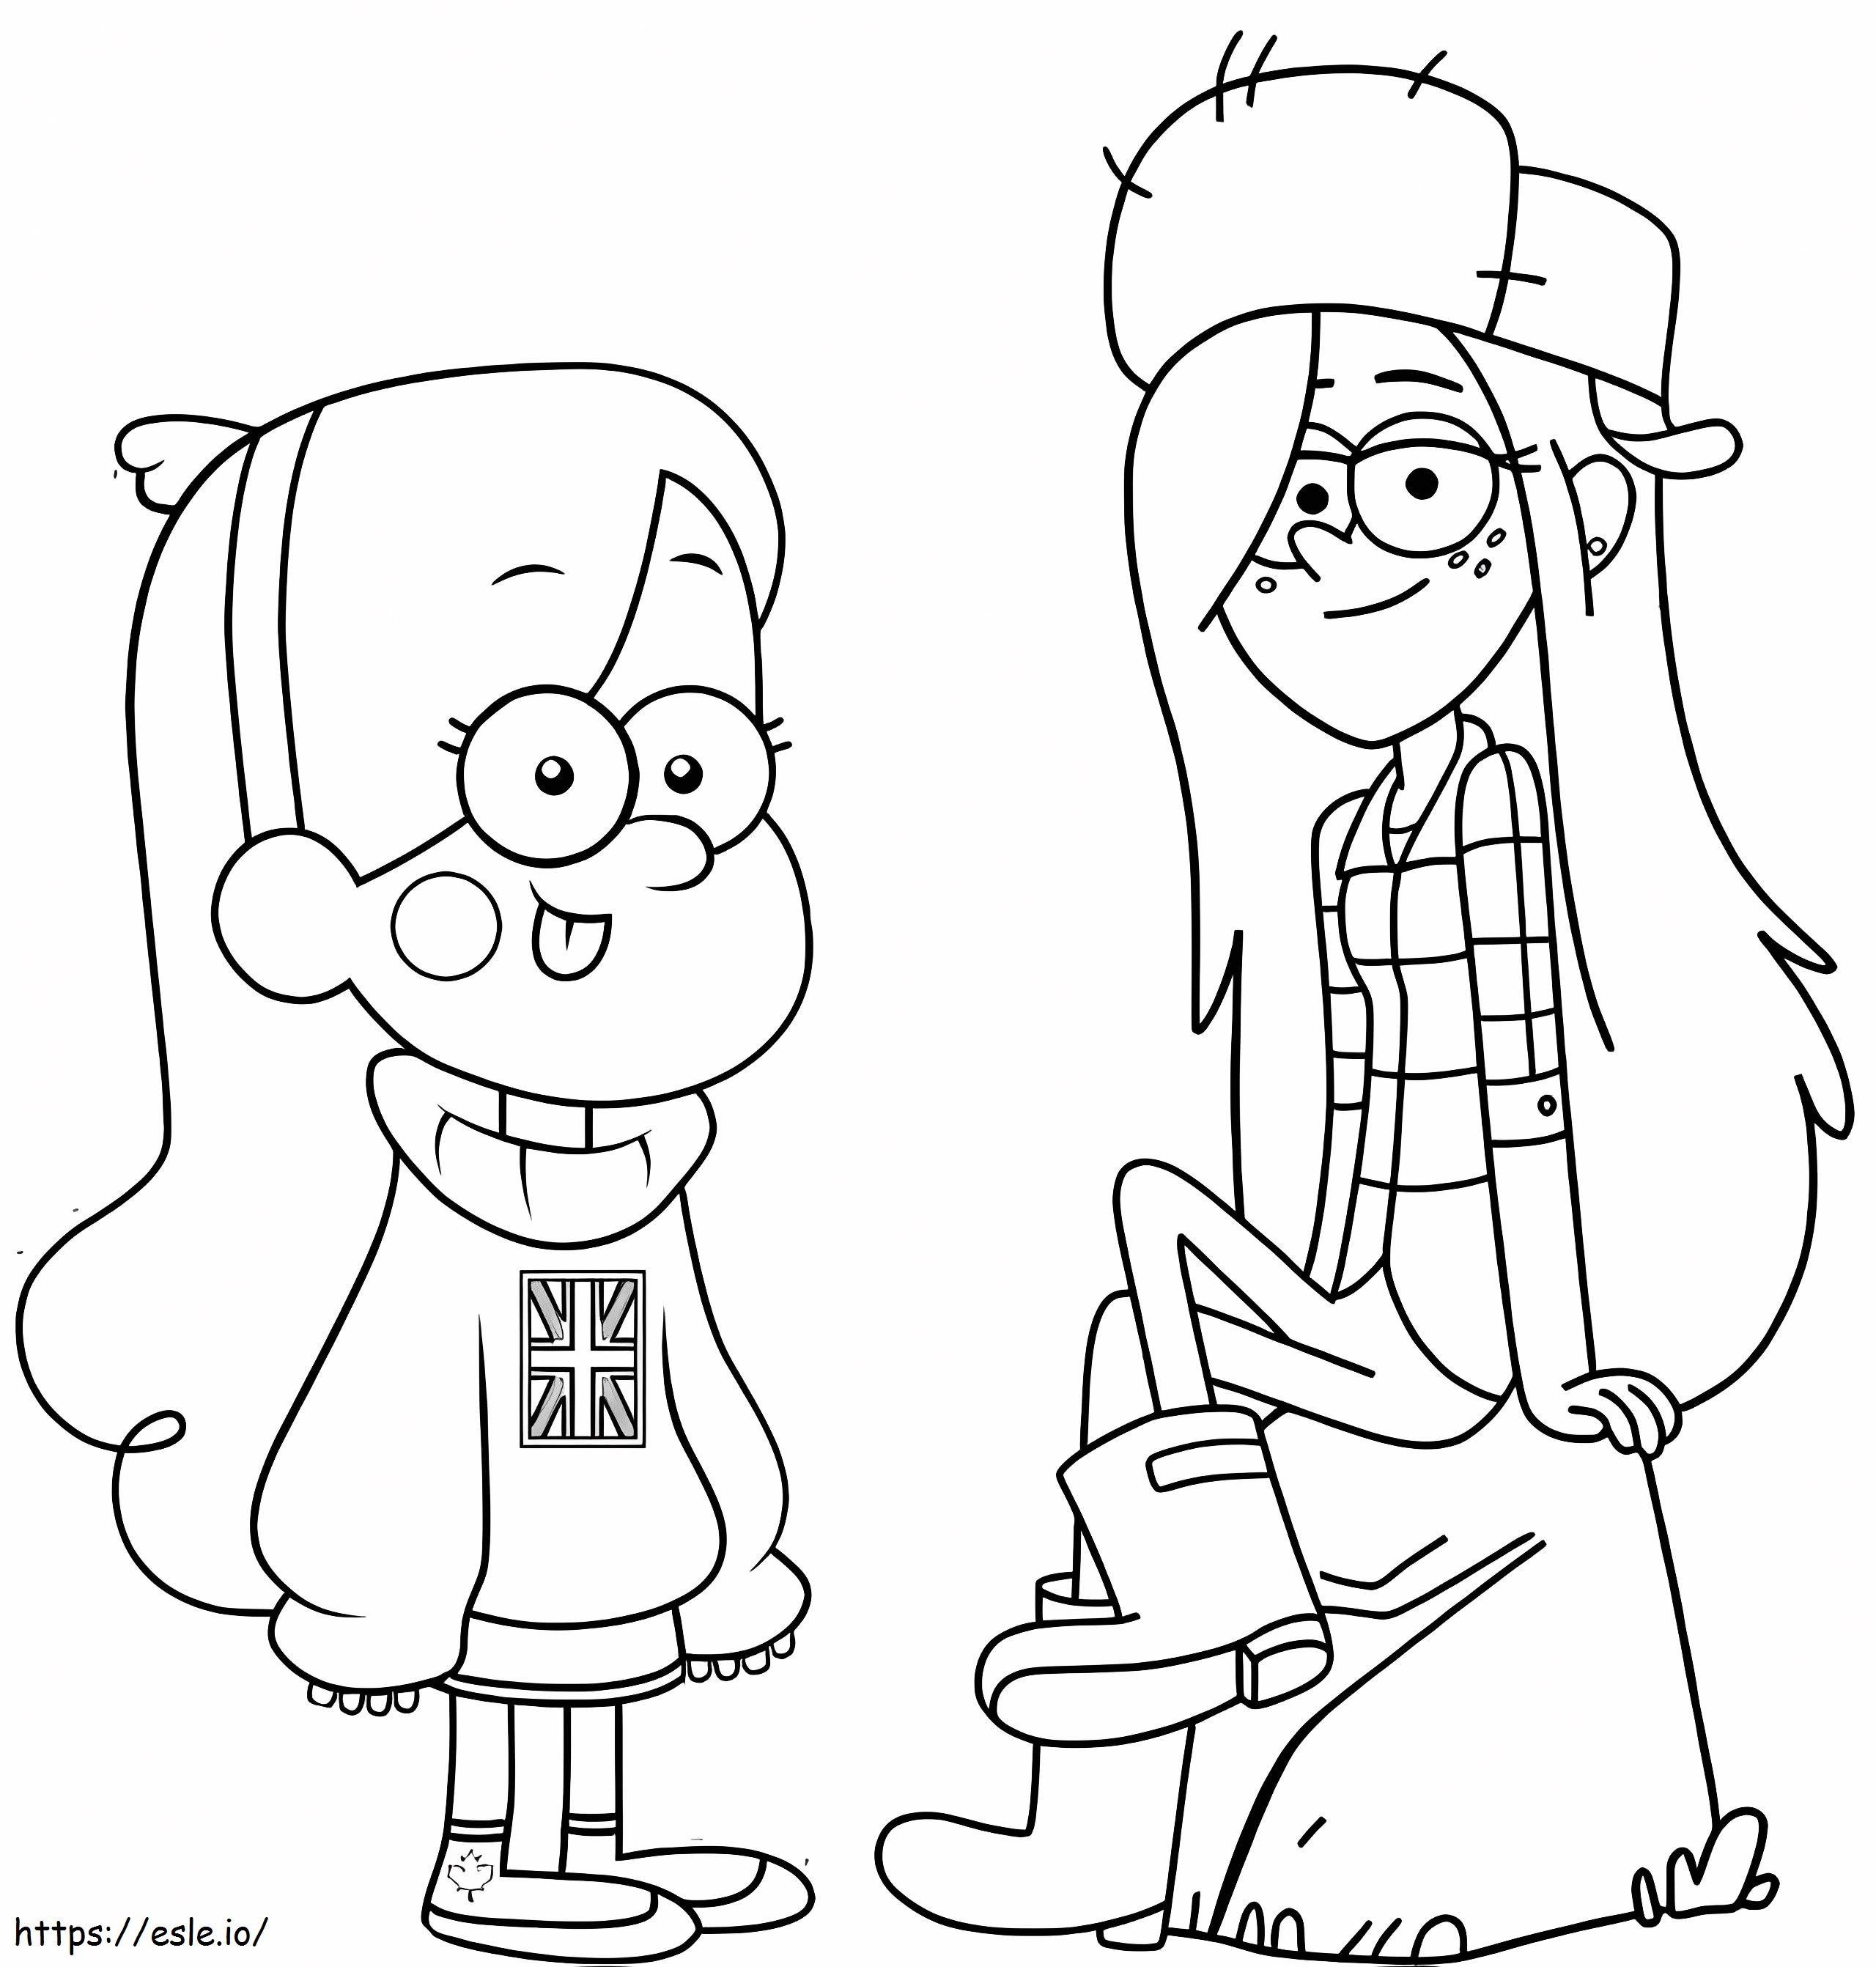 Mabel en Wendy kleurplaat kleurplaat